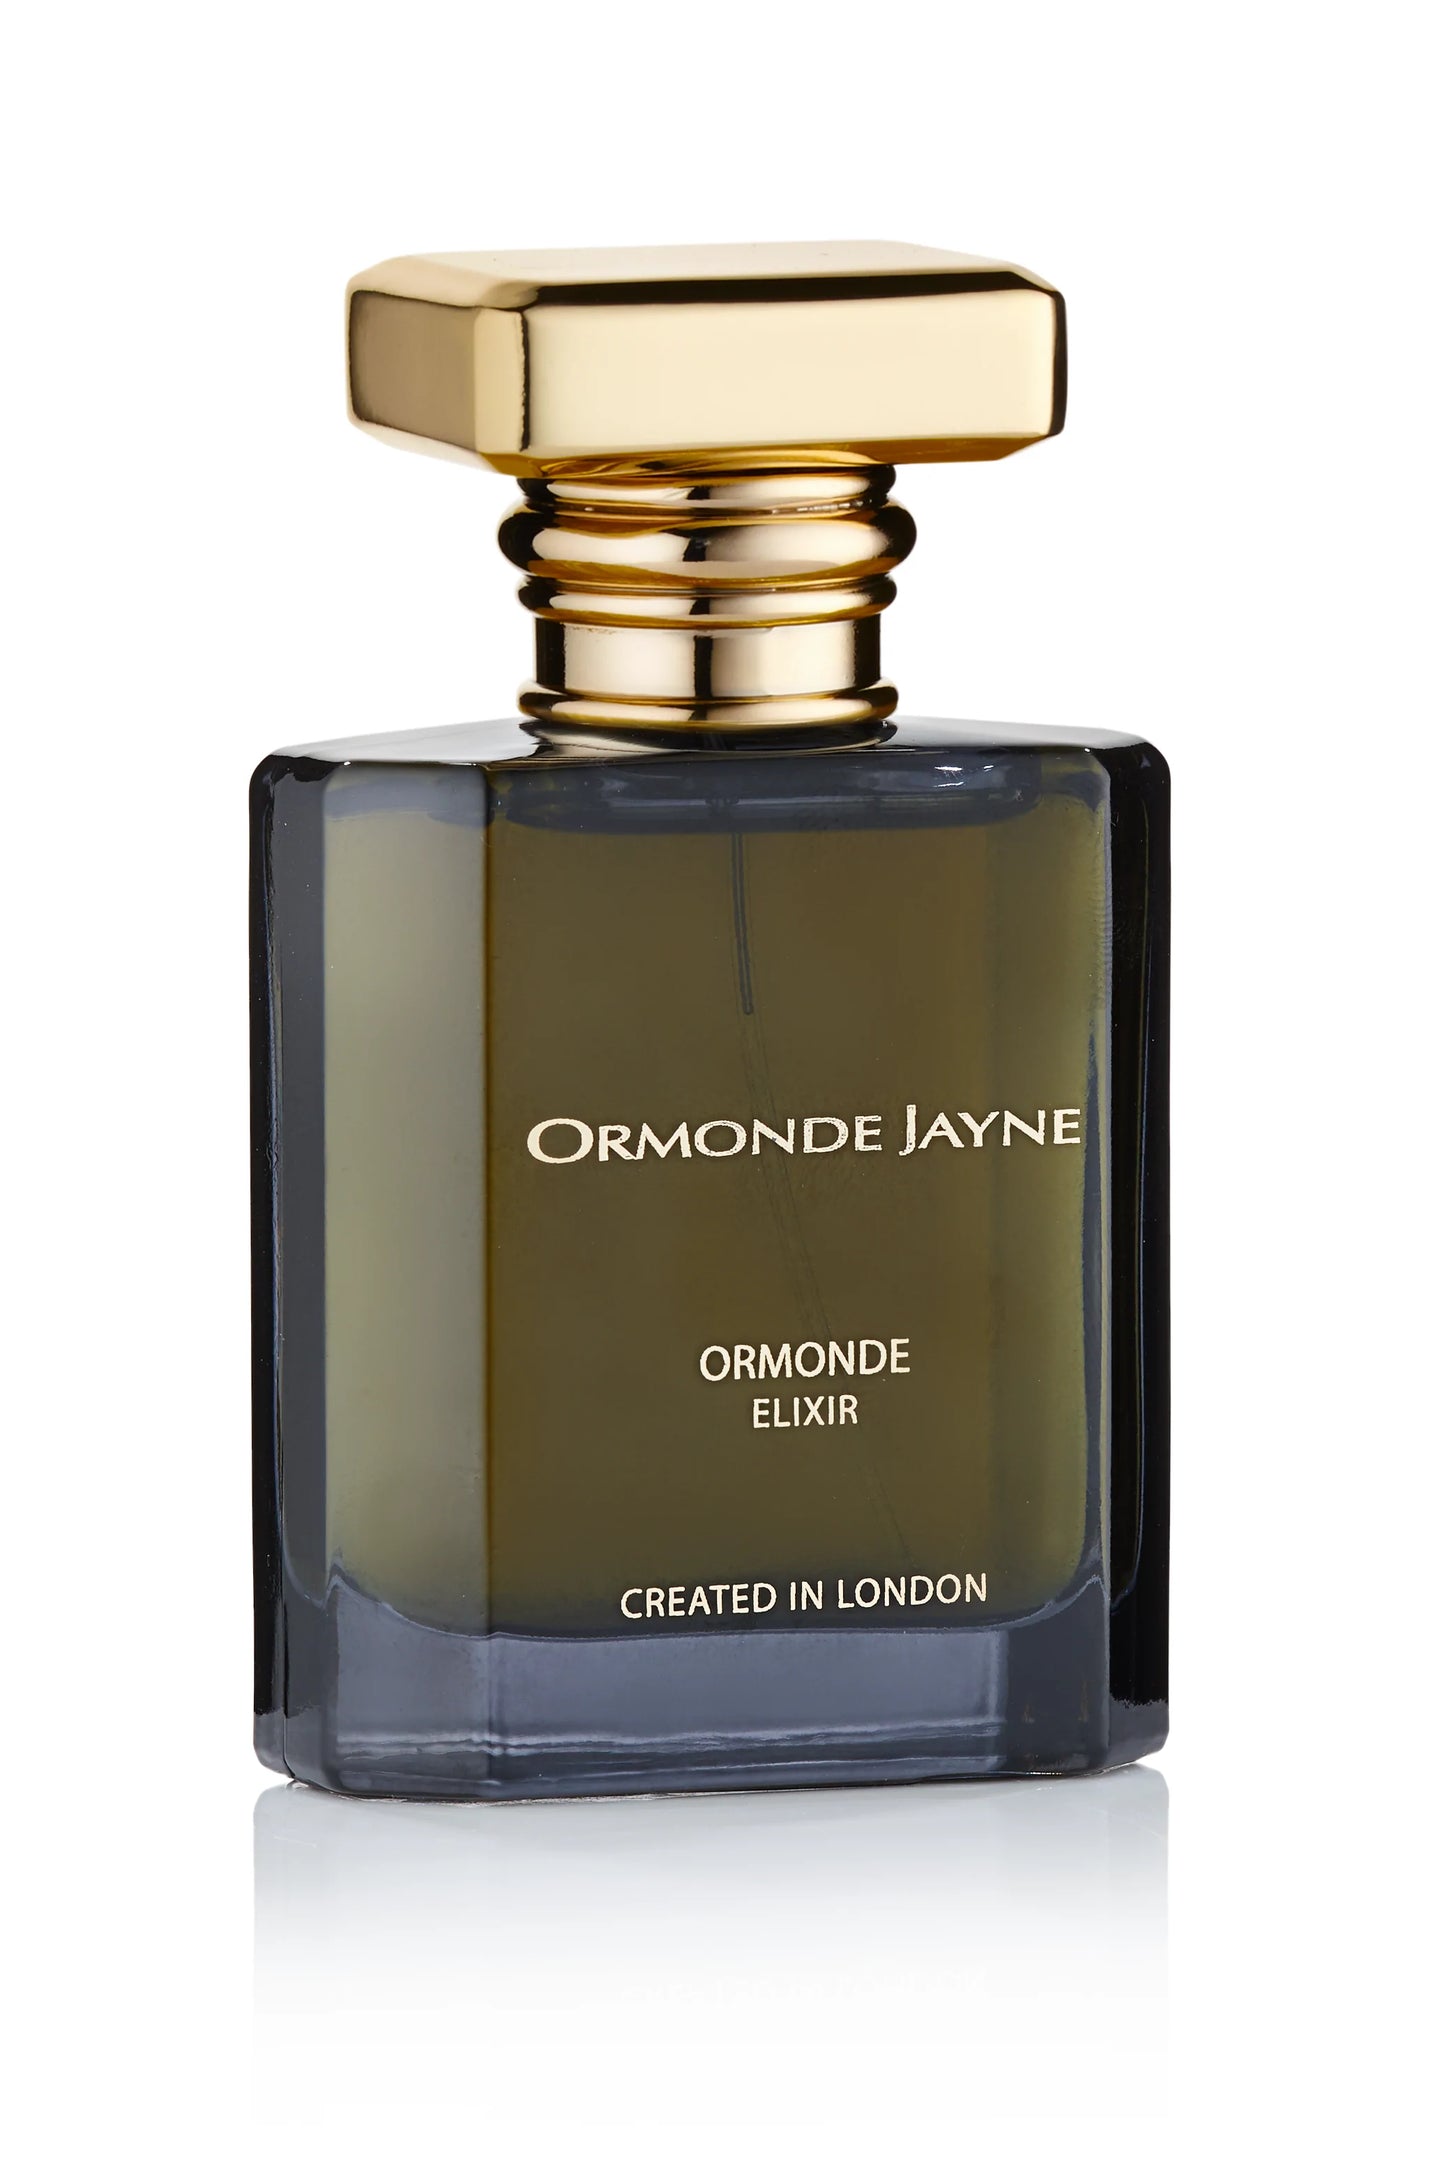 Ormonde Jayne Ormonde Elixir 2ml 0.06 فلوريدا. عينة العطر الرسمية oz